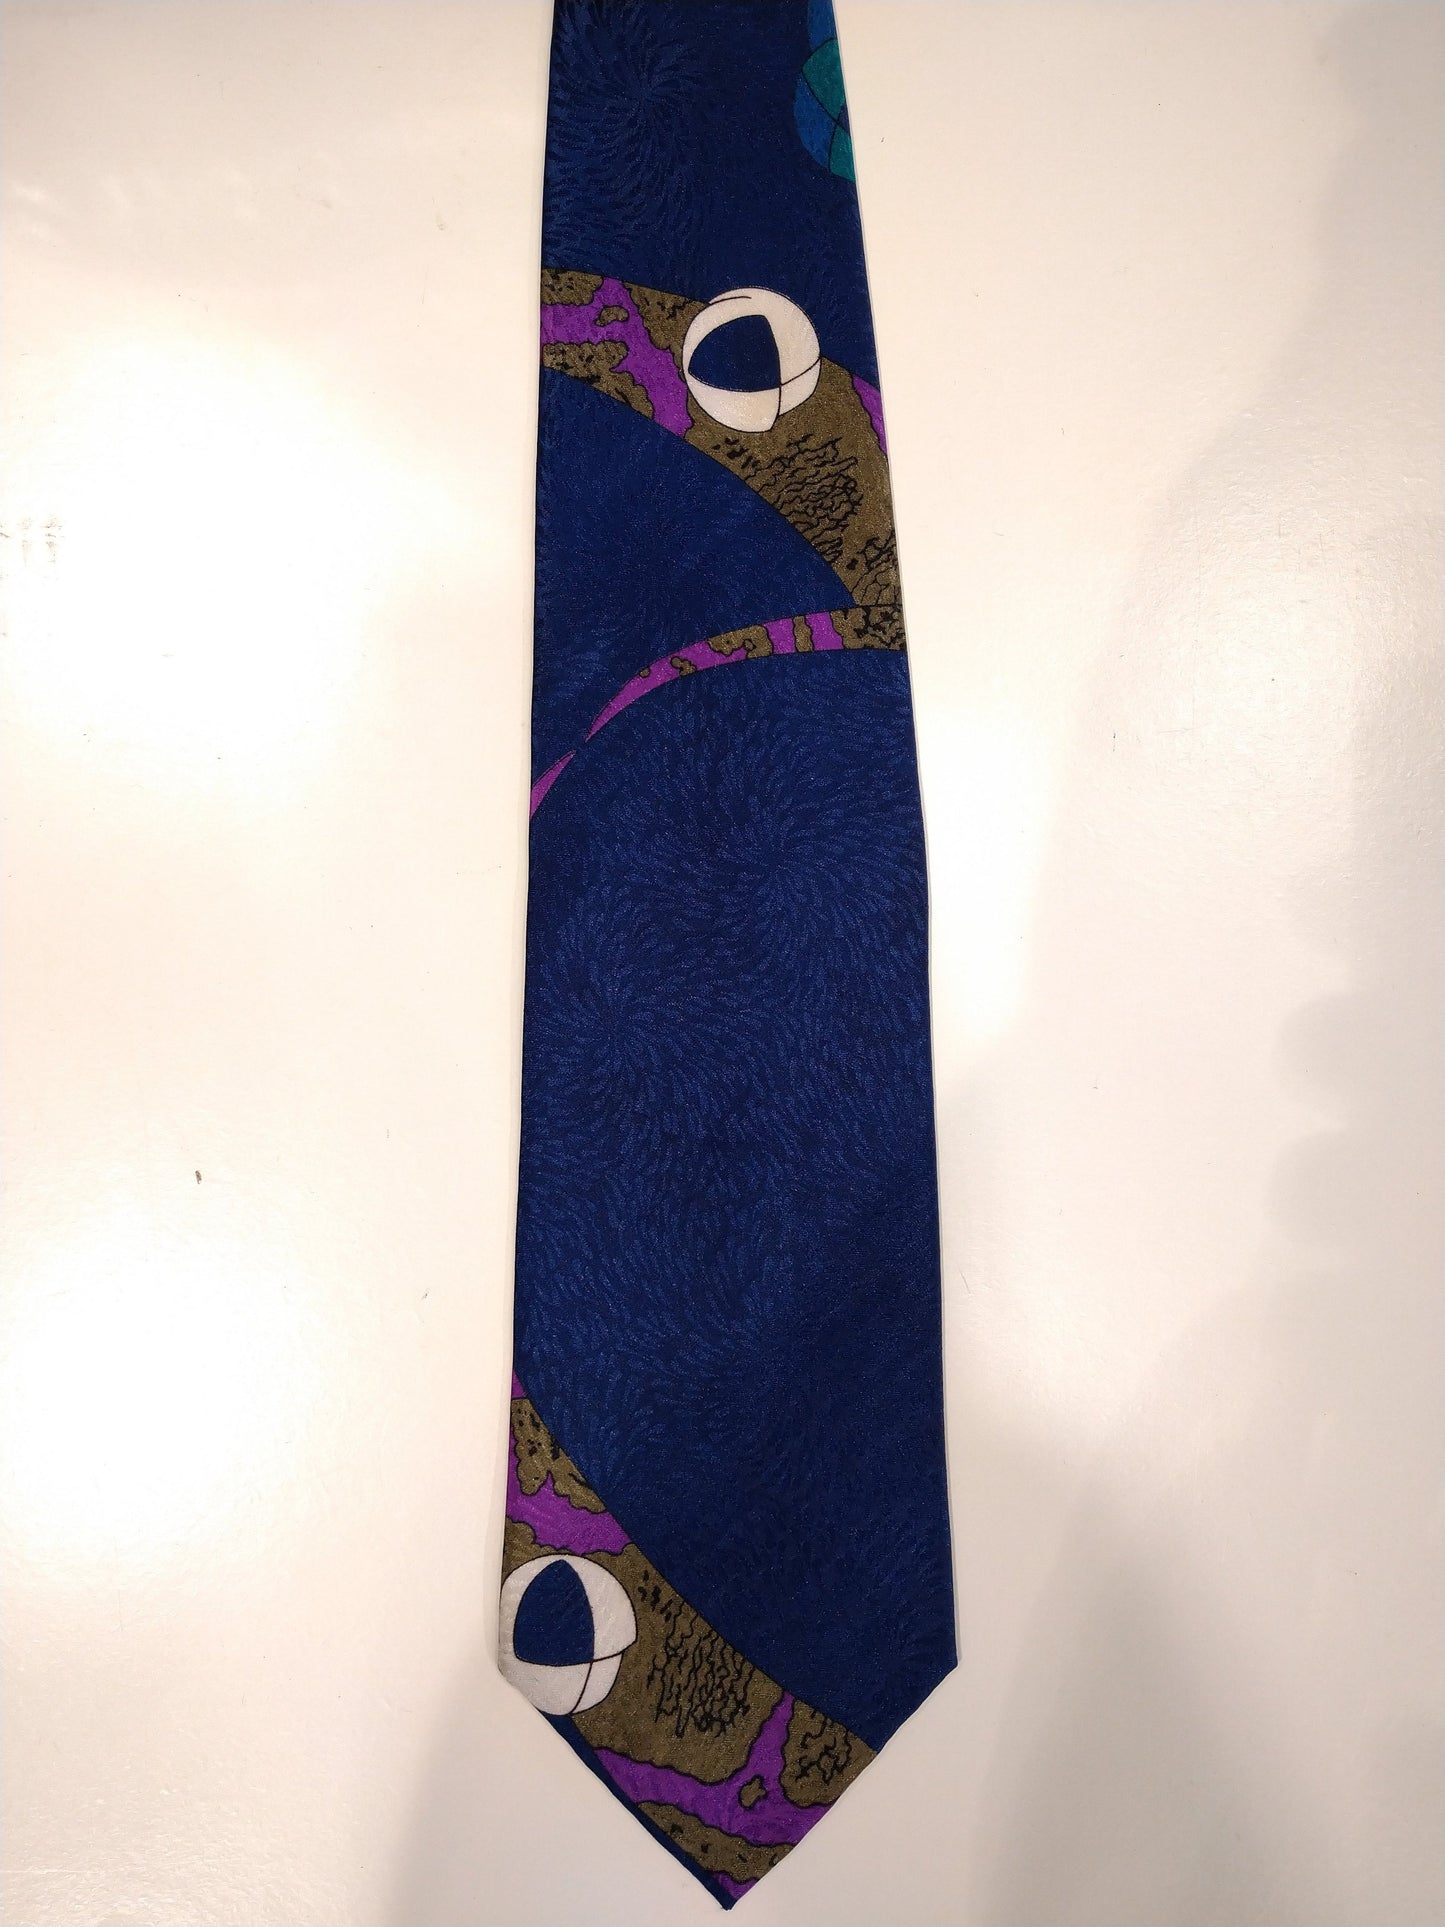 Surrey Polyester la corbata. Motivo púrpura azul separado.